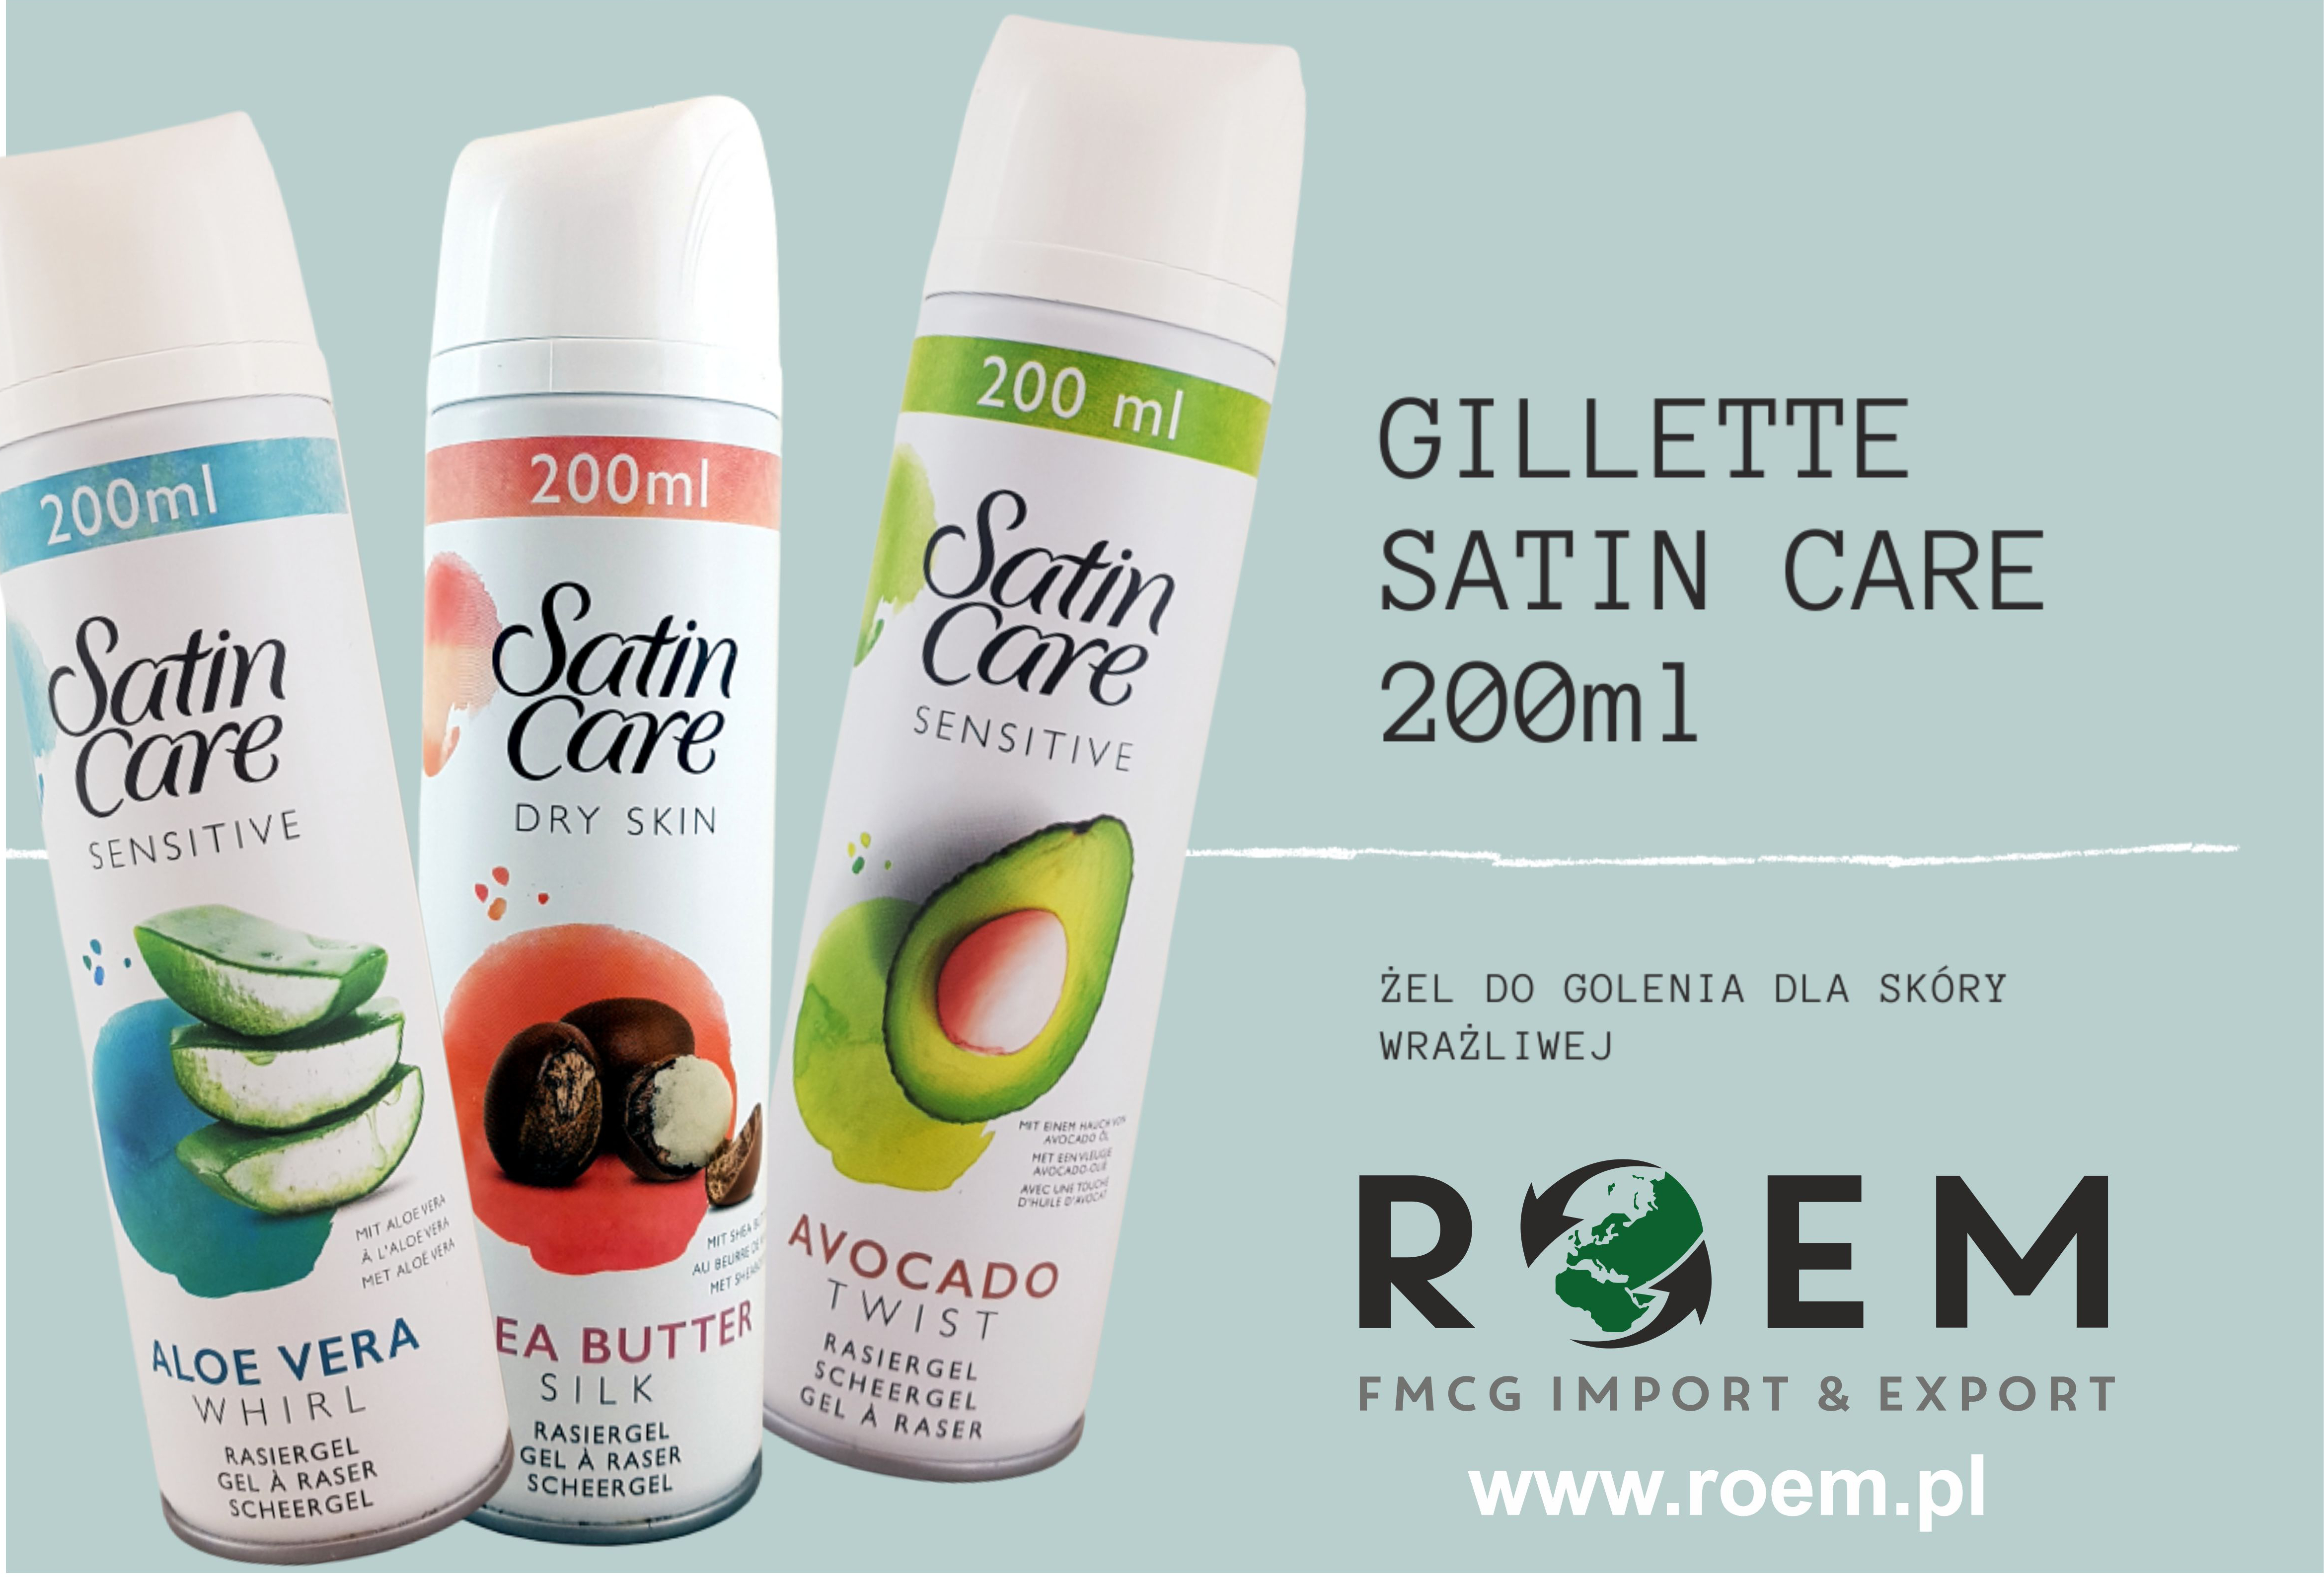 Gillette Satin Care - Nowość w ofercie hurtownii chemii gospodarczej i kosmetyków